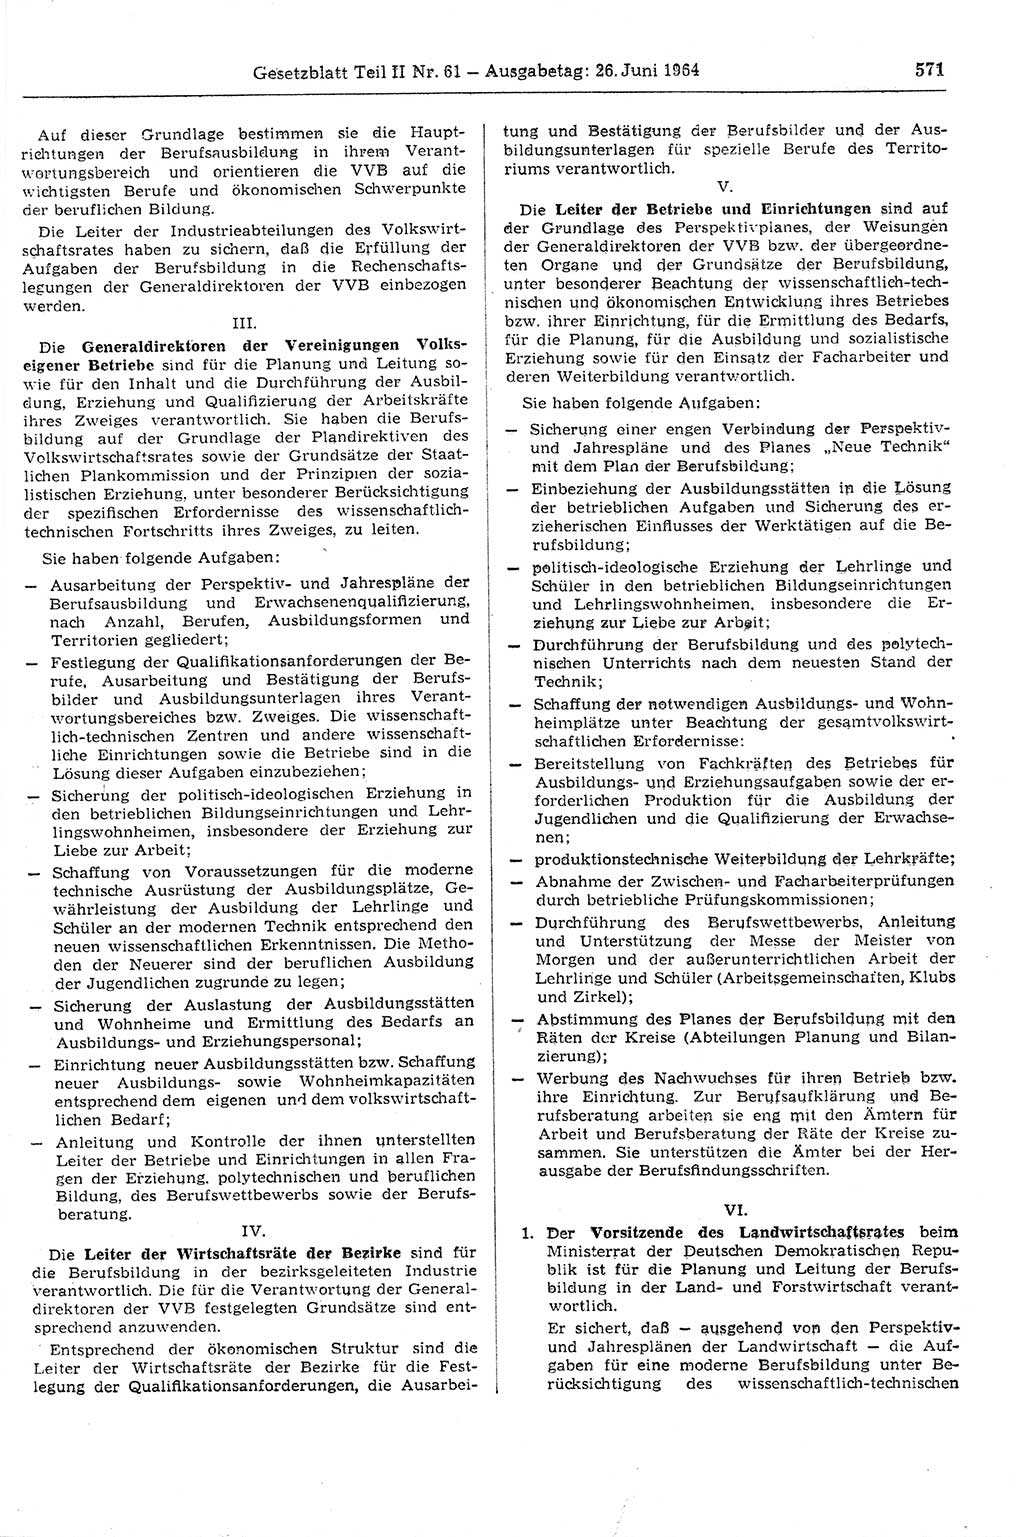 Gesetzblatt (GBl.) der Deutschen Demokratischen Republik (DDR) Teil ⅠⅠ 1964, Seite 571 (GBl. DDR ⅠⅠ 1964, S. 571)